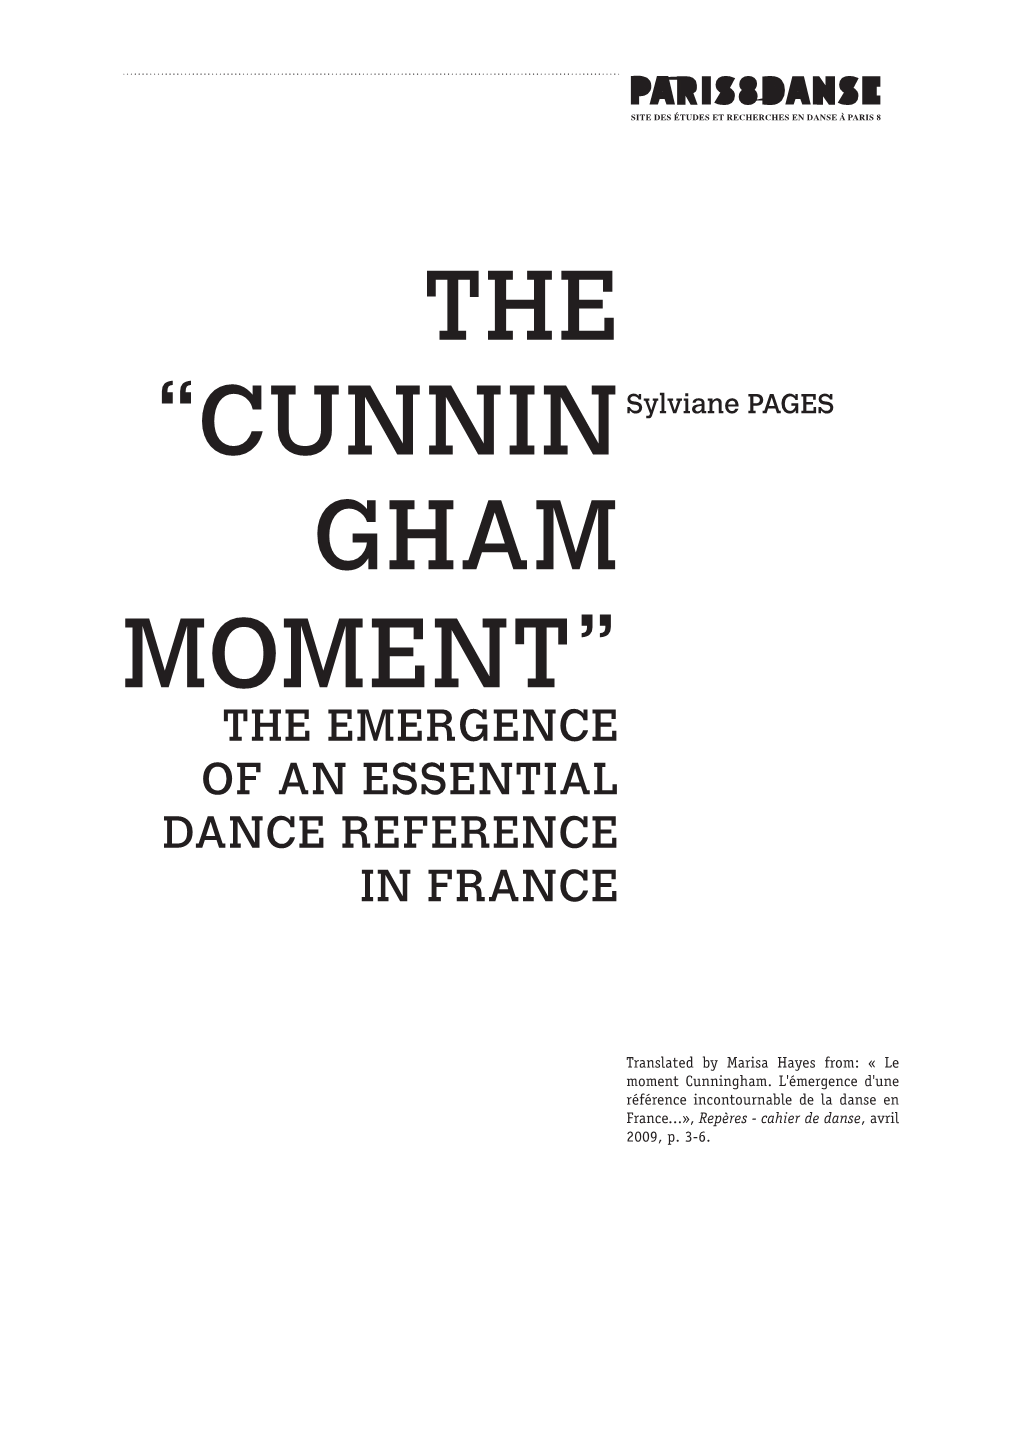 The “Cunnin Gham Moment”